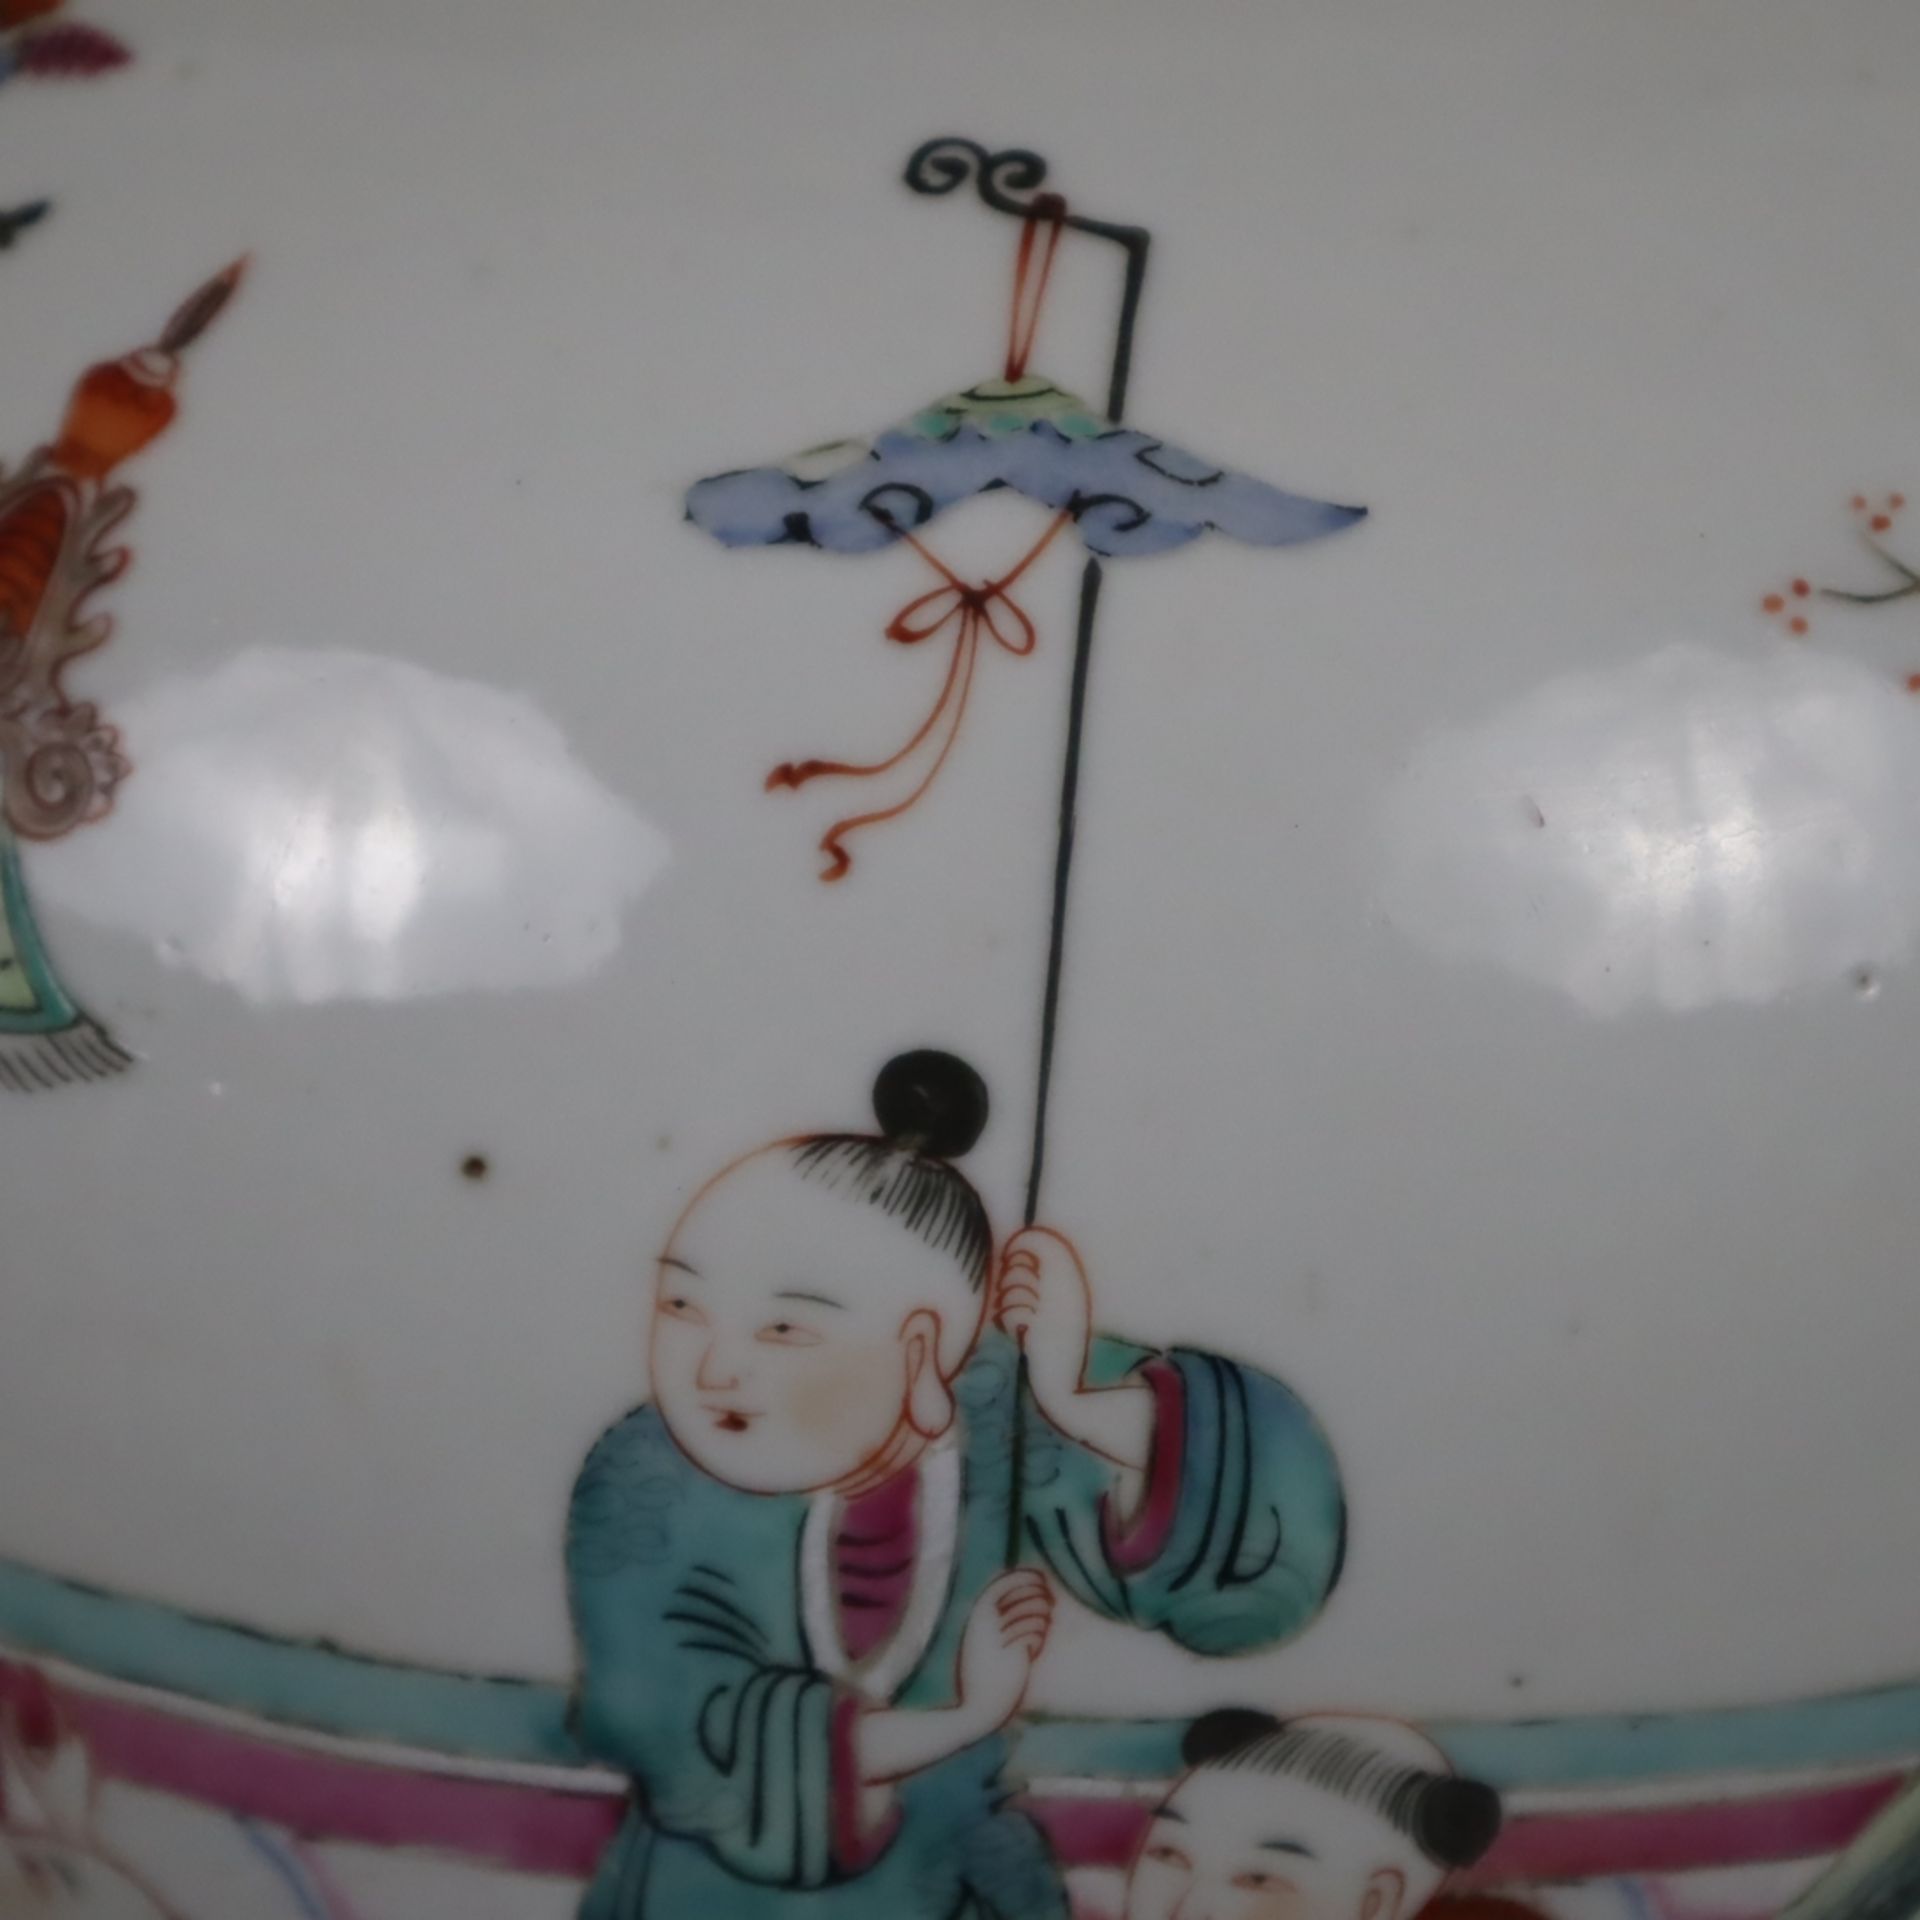 Porzellan-Deckeltopf - China, kugeliger Korpus mit Steckdeckel, auf der Wandung mehrfigurige szenis - Image 10 of 15